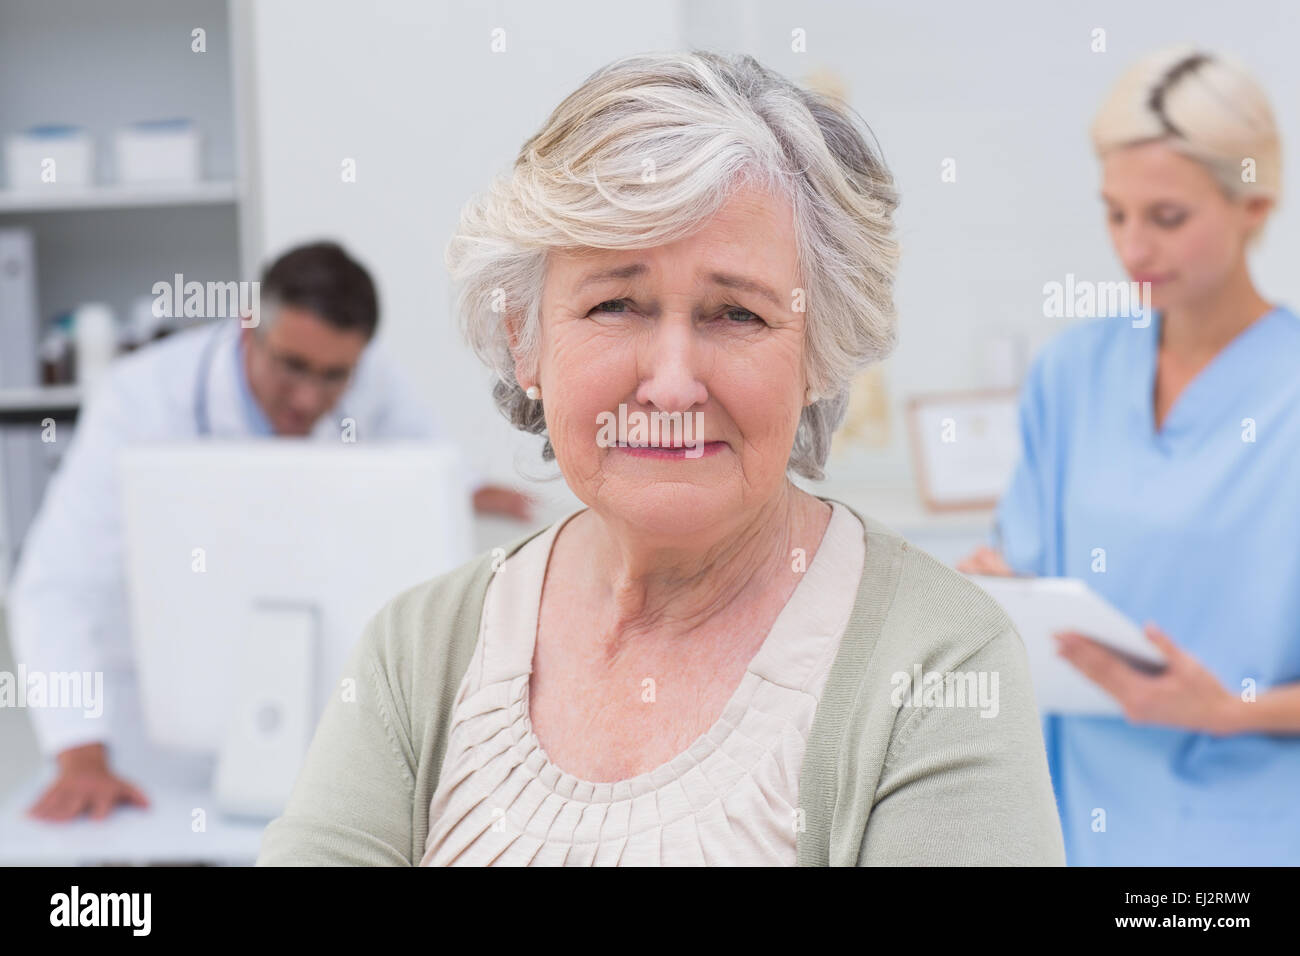 Unglückliche Patient mit Arzt und Krankenschwester arbeitet im Hintergrund Stockfoto